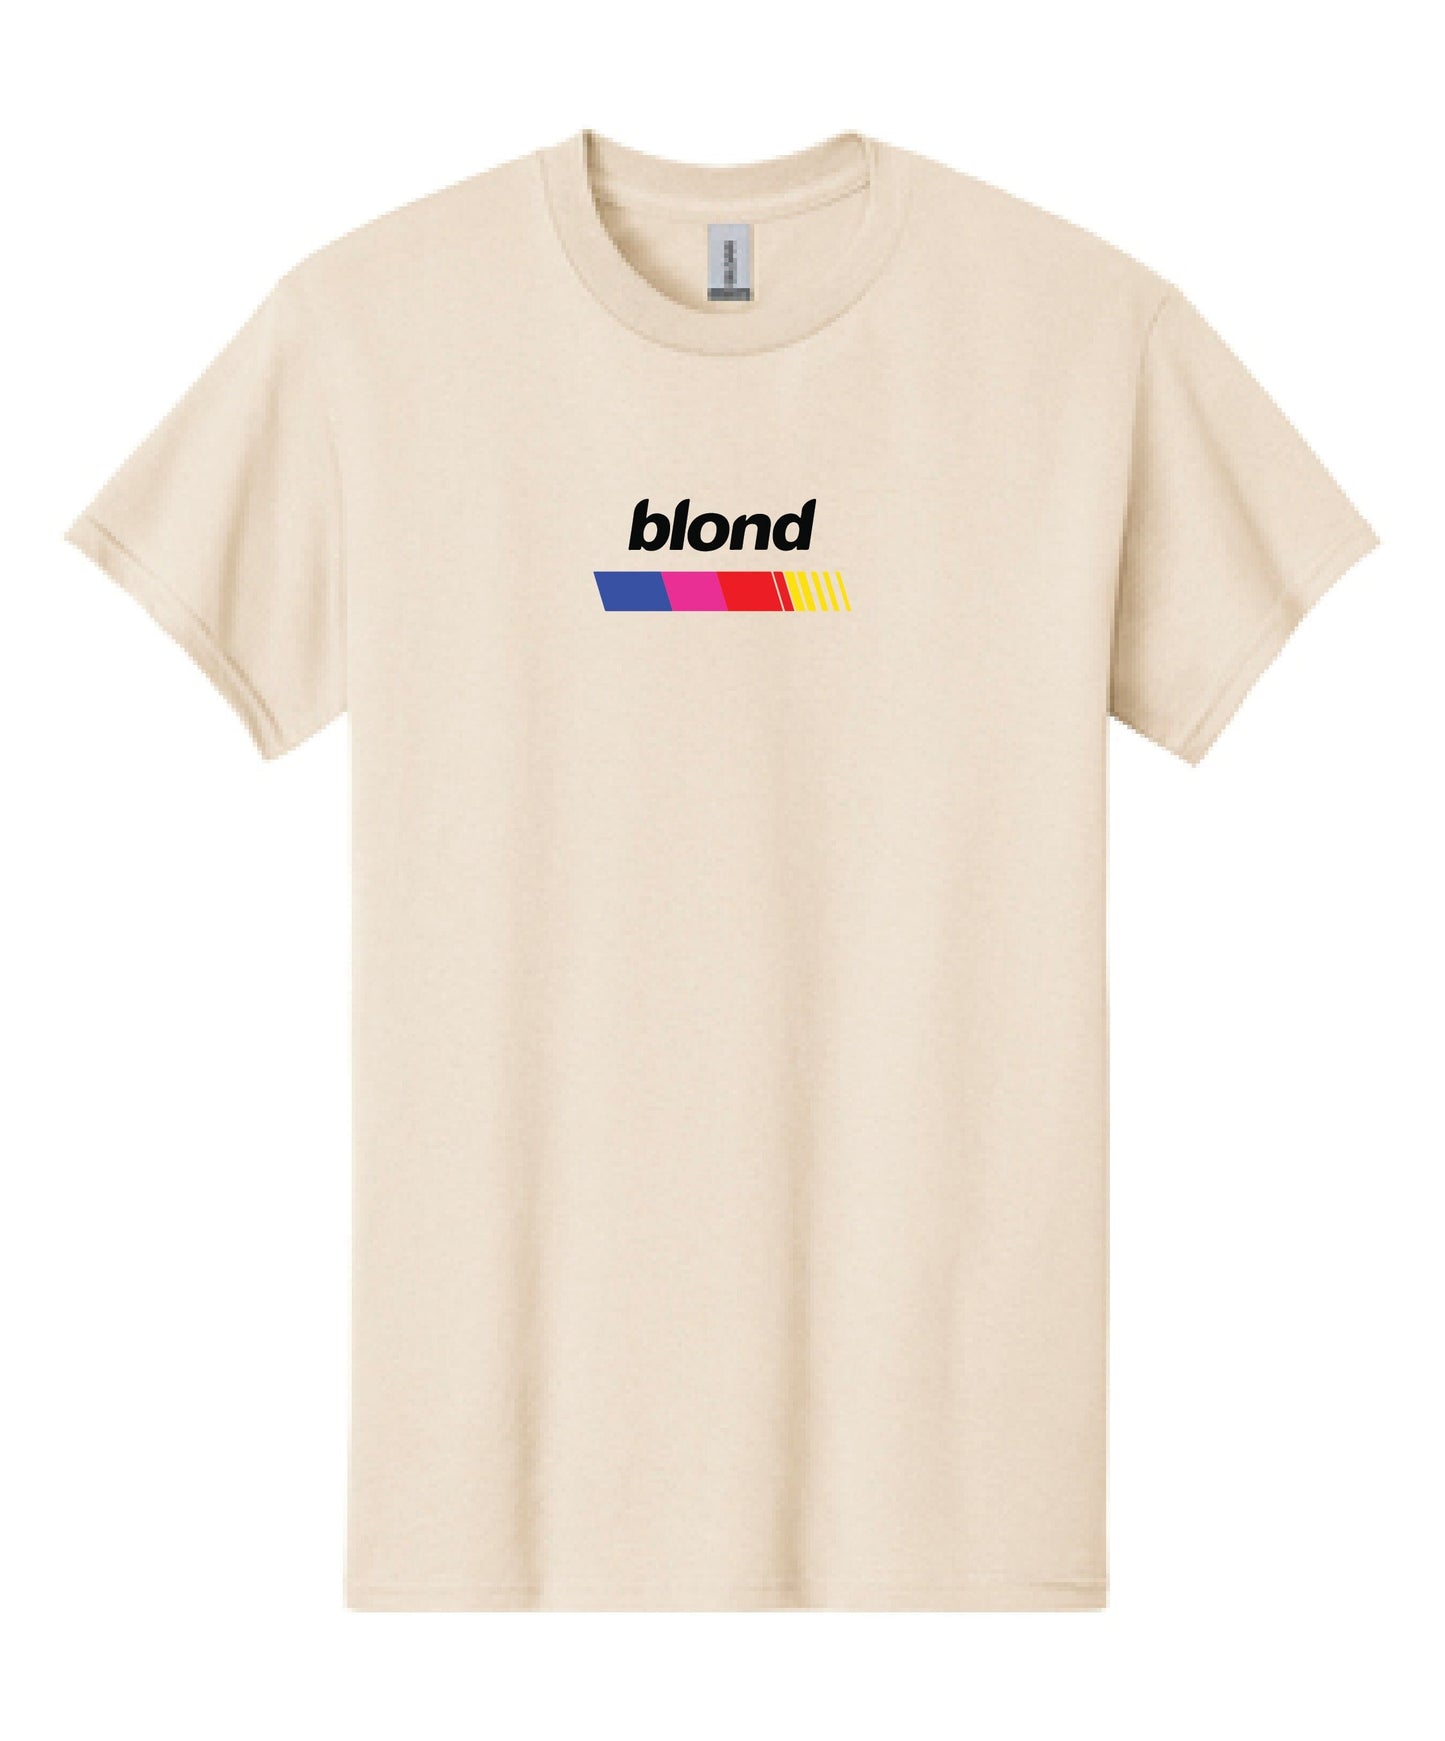 Frank Ocean T-Shirt | Blond Frank Ocean T-Shirt | Frank Ocean Blond | Music T-Shirt | Gift | Blond Album | Music T-shirt Gift